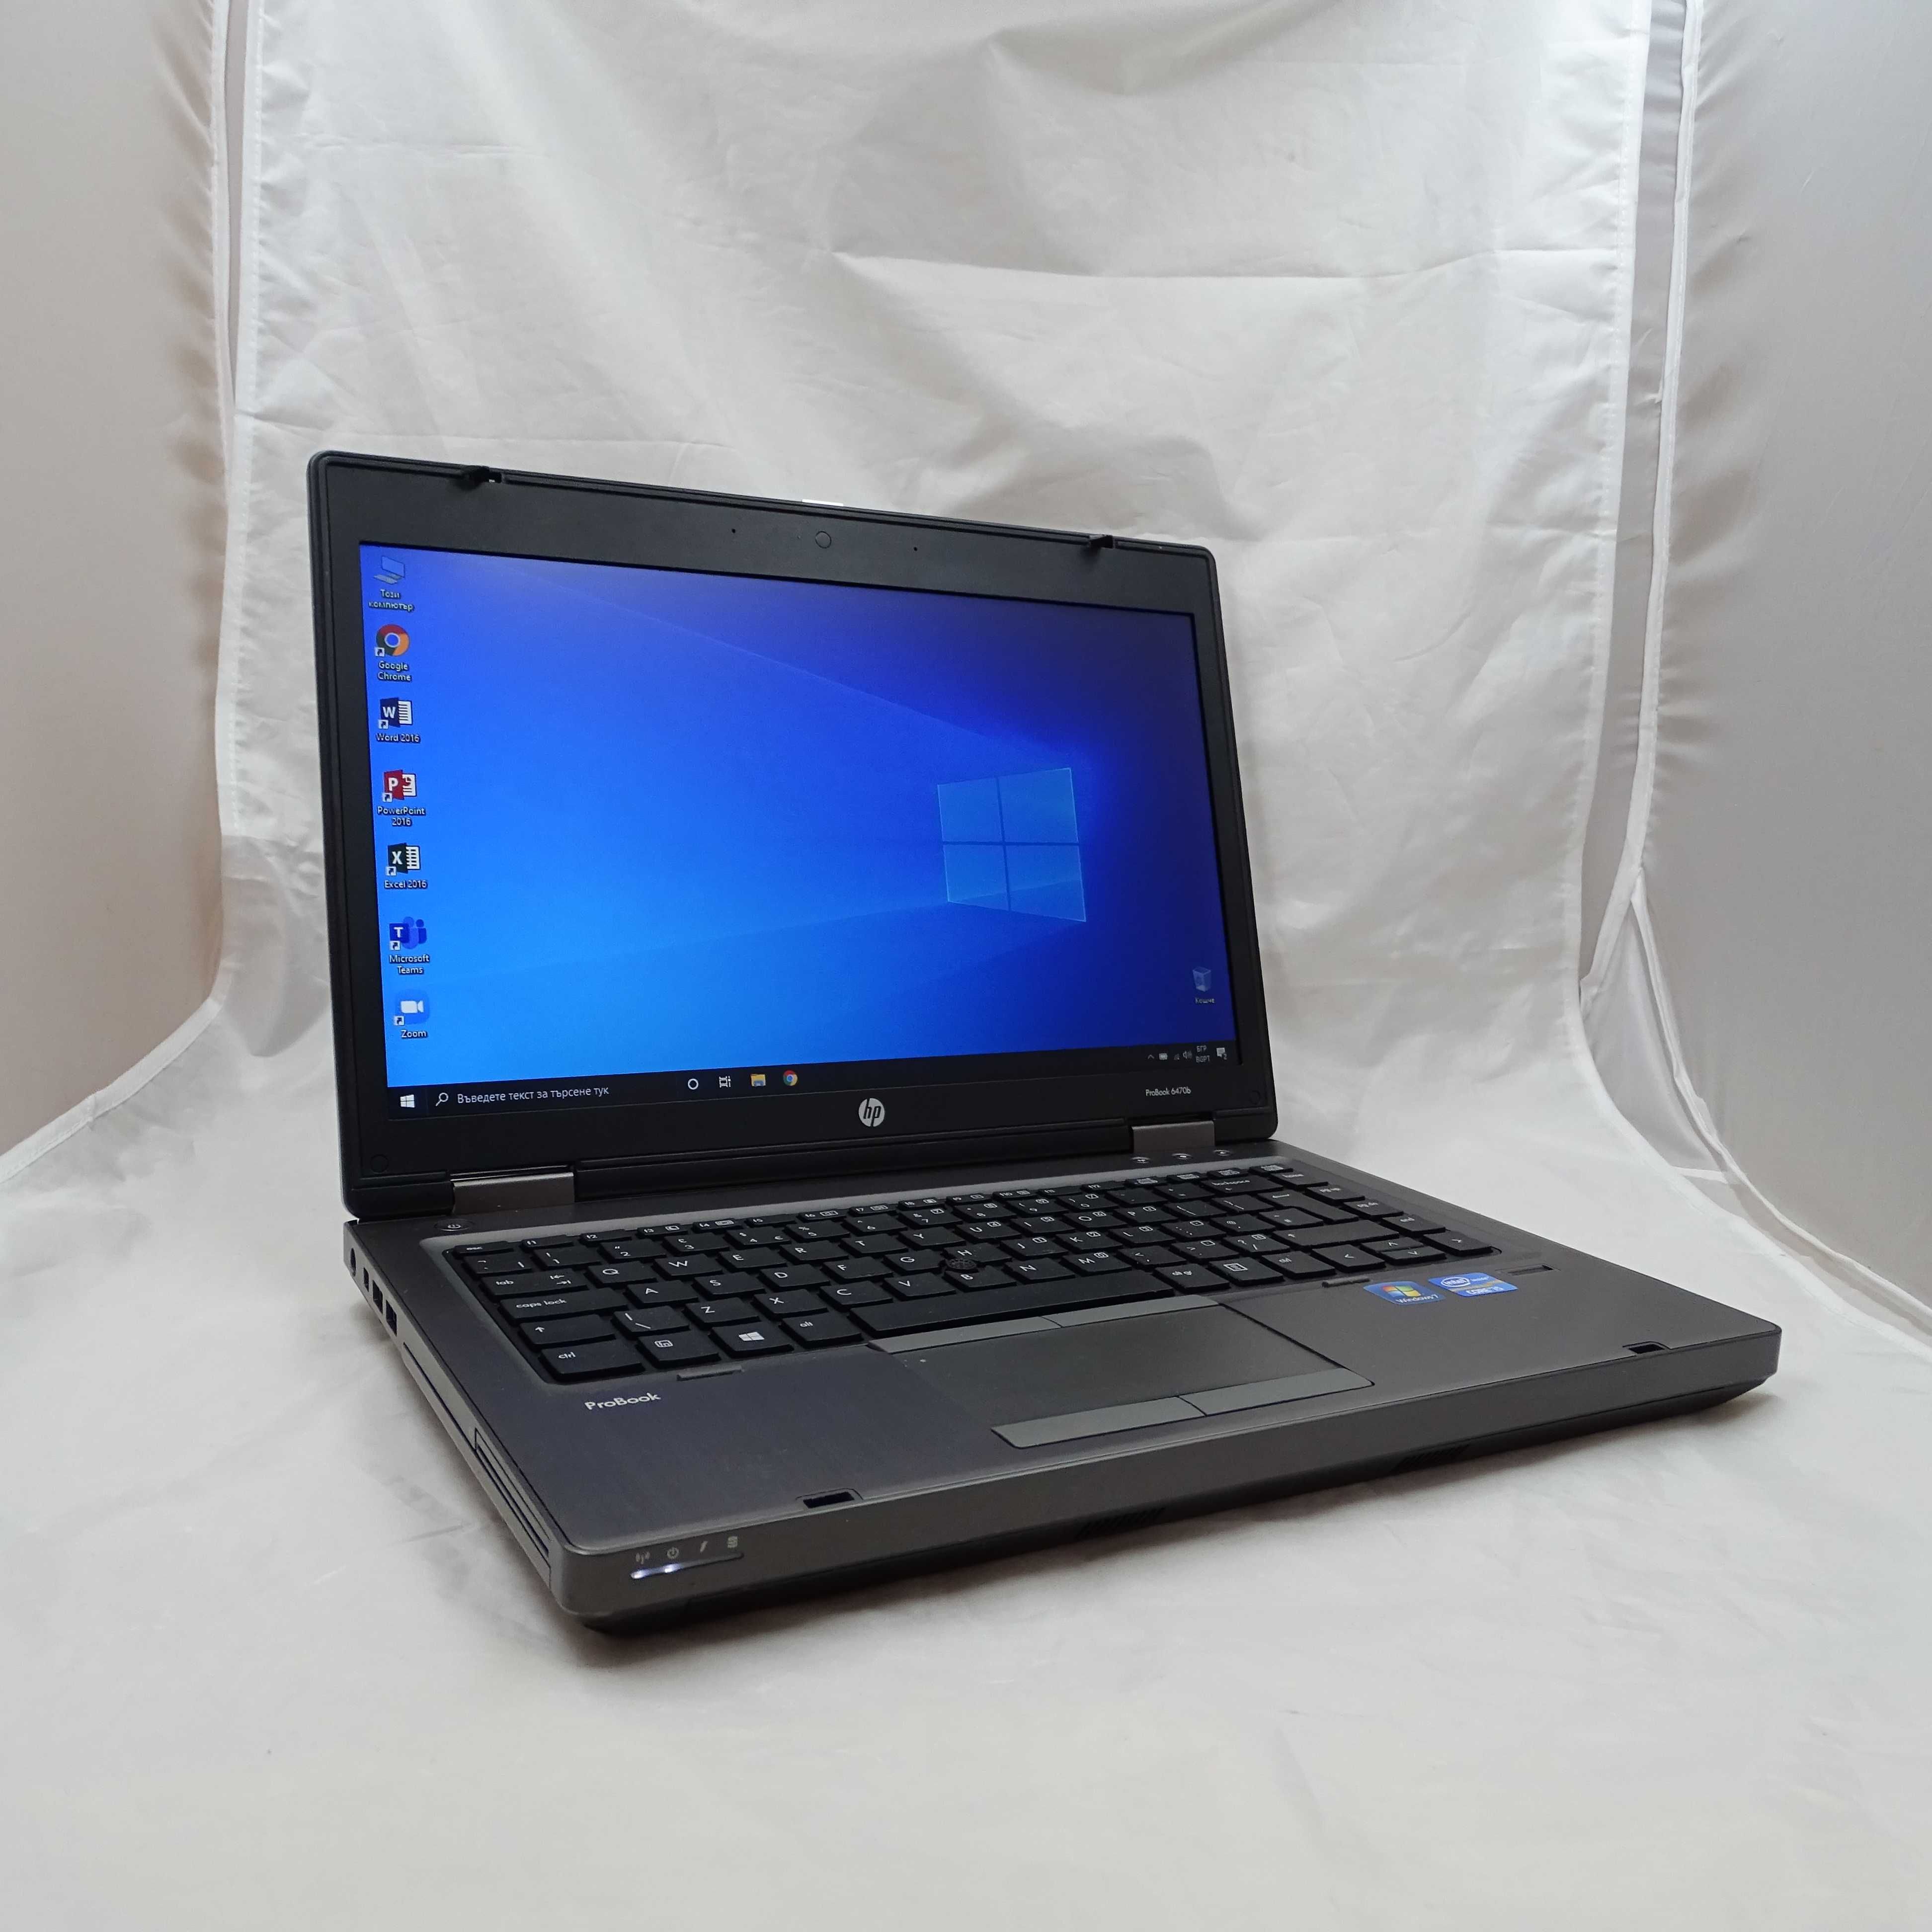 Лаптоп HP 6470B I5-3320M 8GB 320GB HDD 14.0 HD с Windows 10